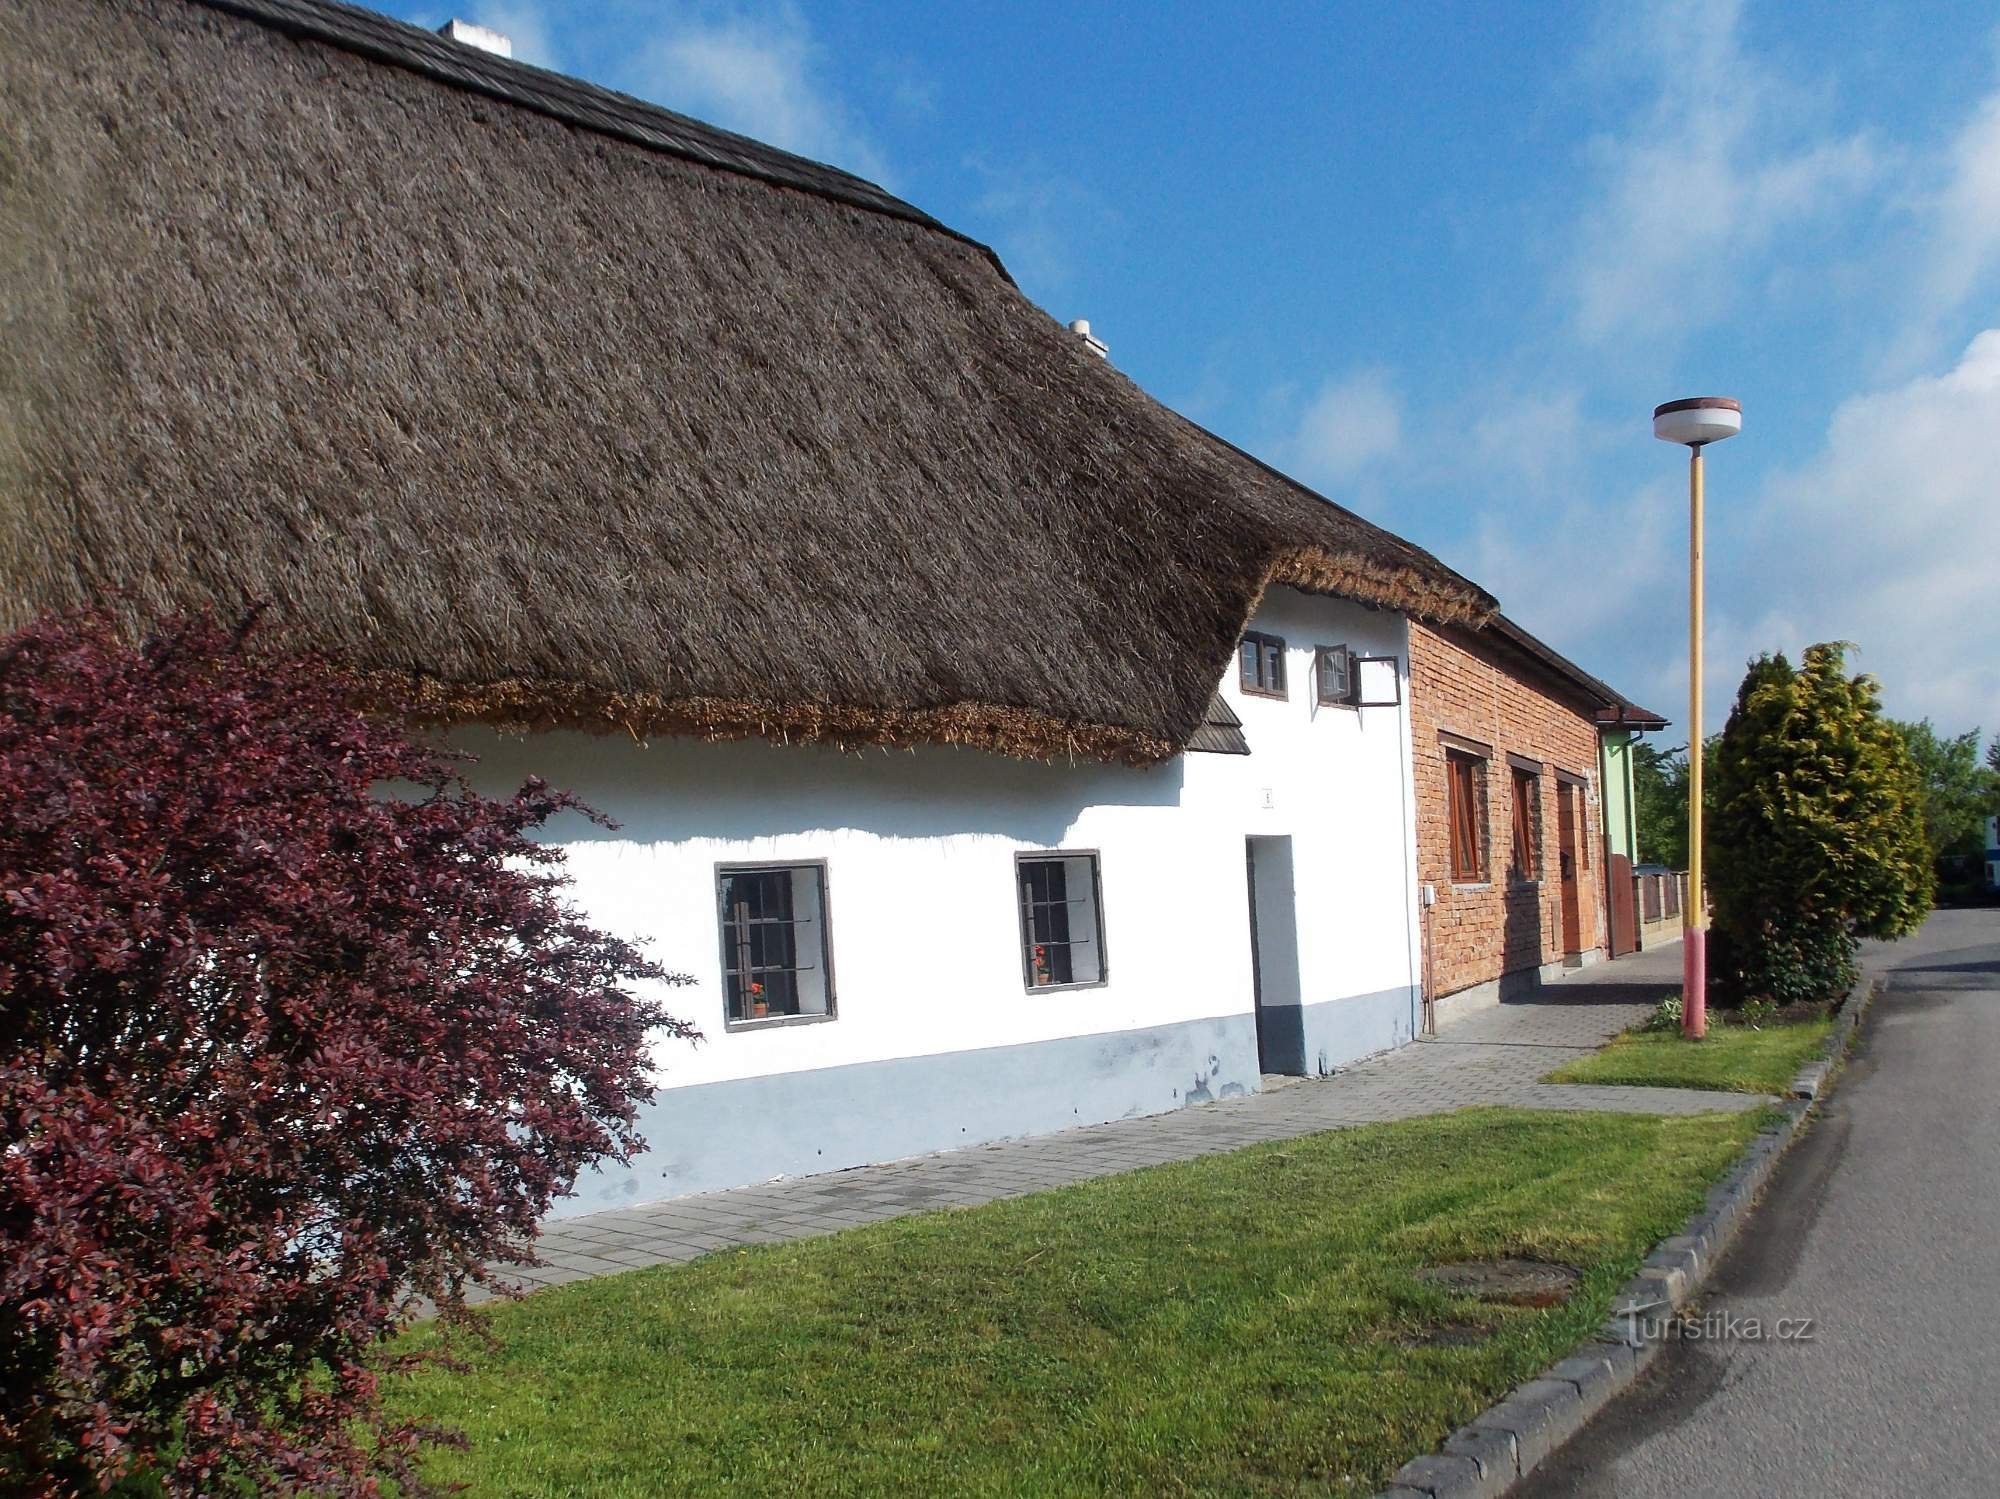 Visita al museo all'aperto e al mulino a vento di Rymice vicino a Zlín